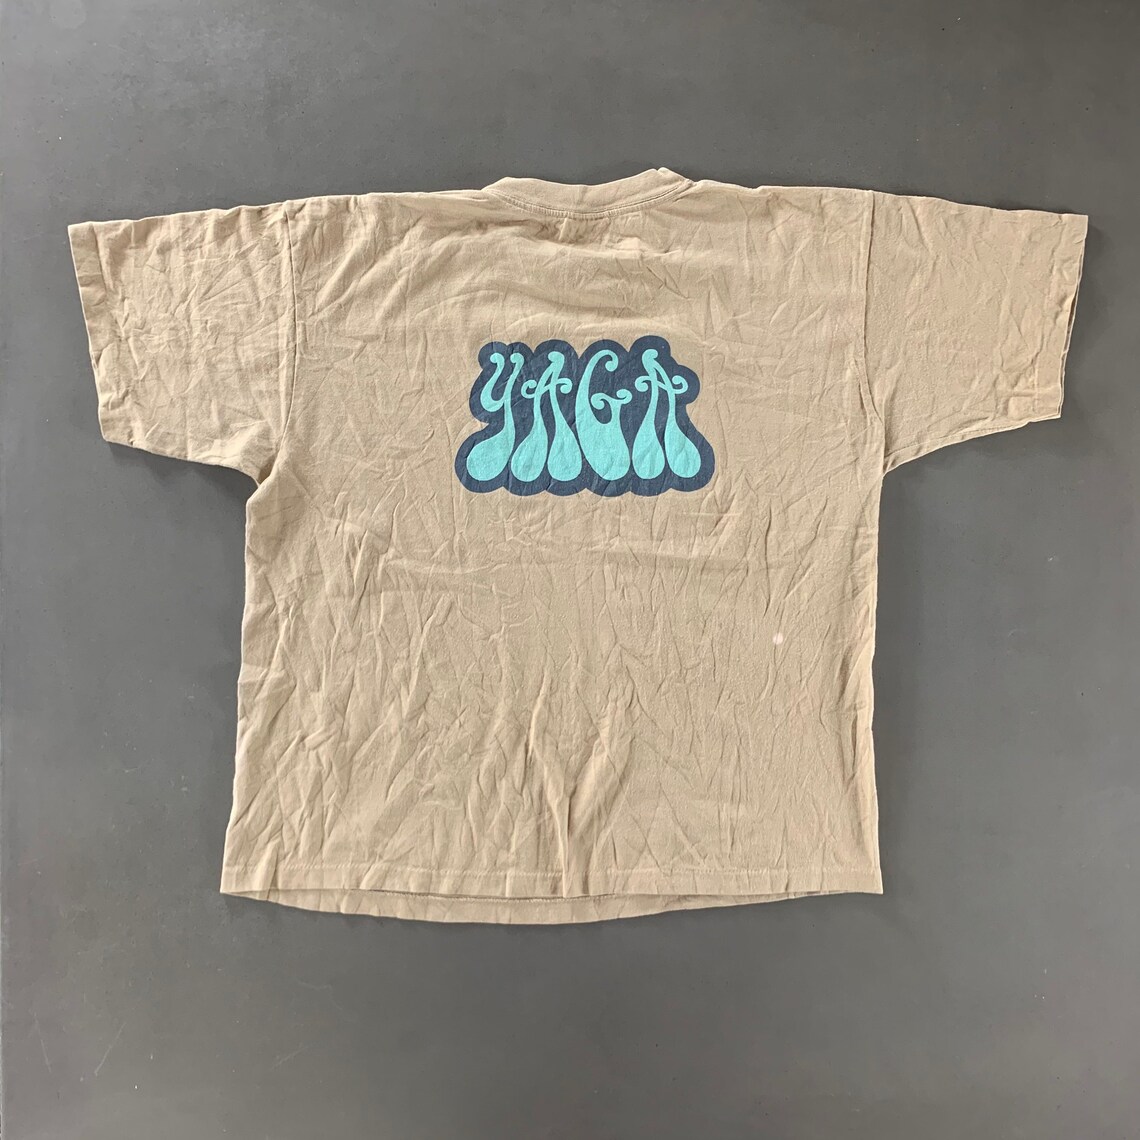 Vintage 1990s Yaga T-shirt size Large | Etsy